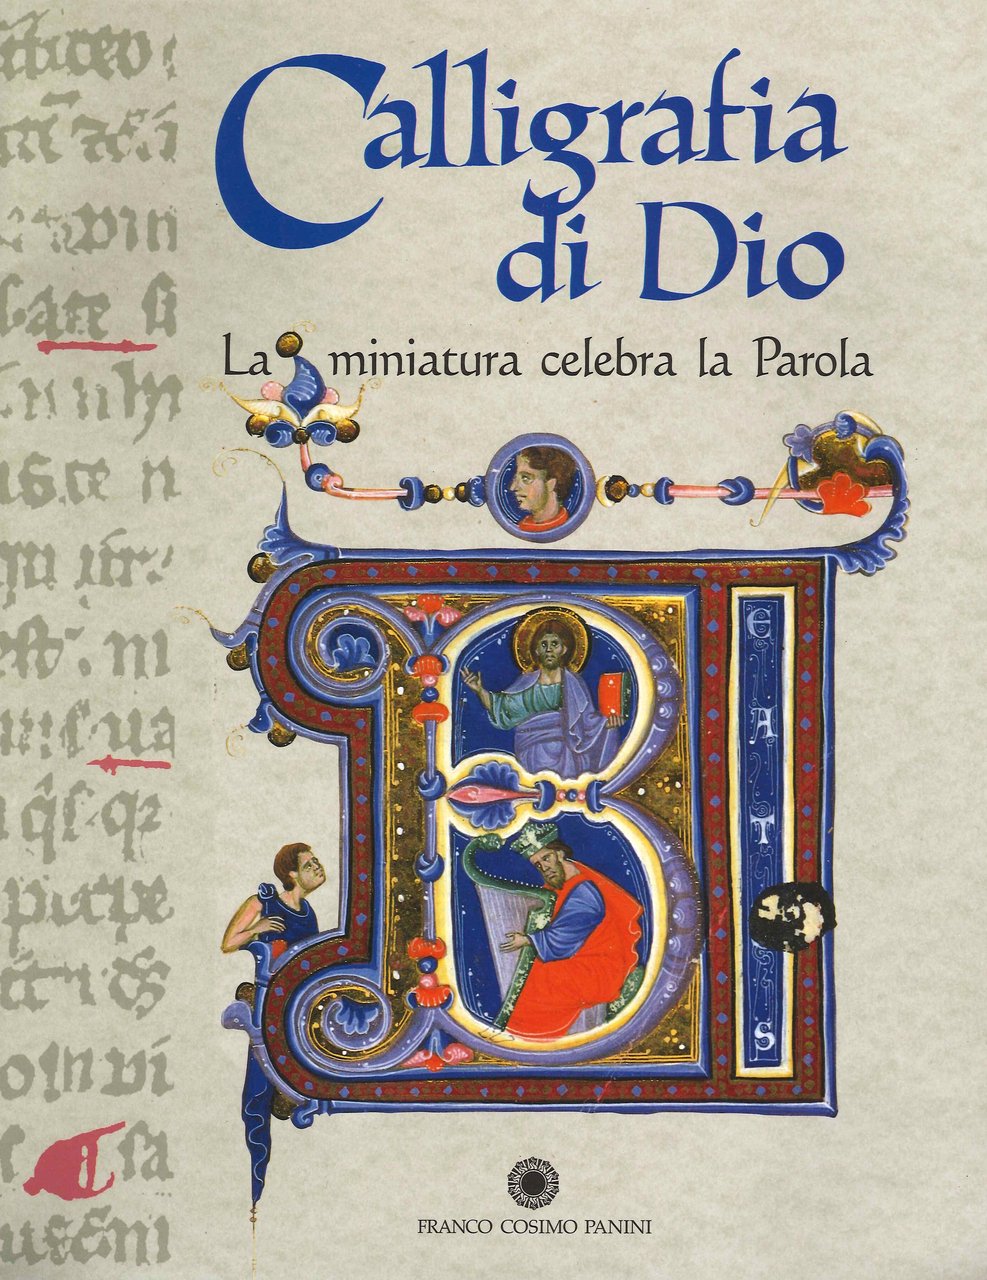 Calligrafia di Dio. La miniatura celebra la parola, Modena, Franco …